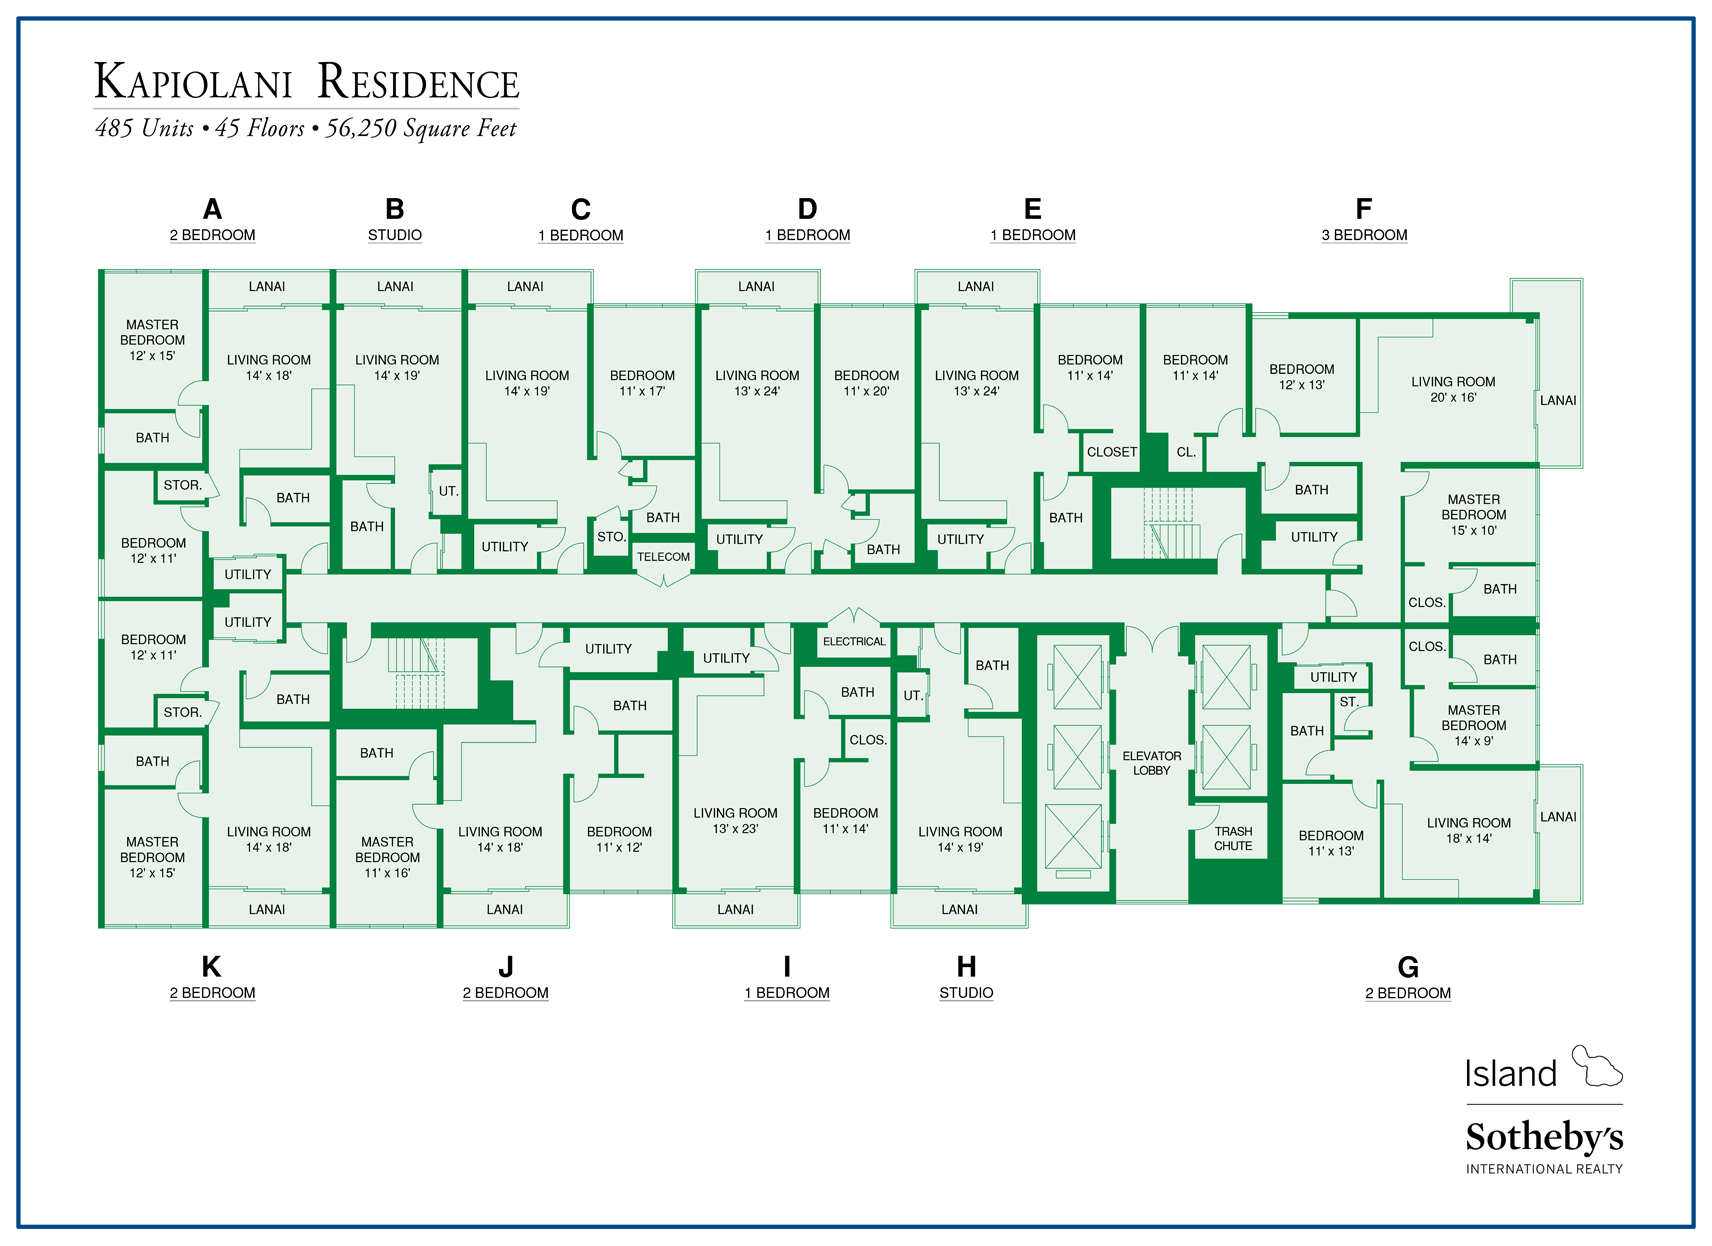 Kapiolani Residence Map Condo